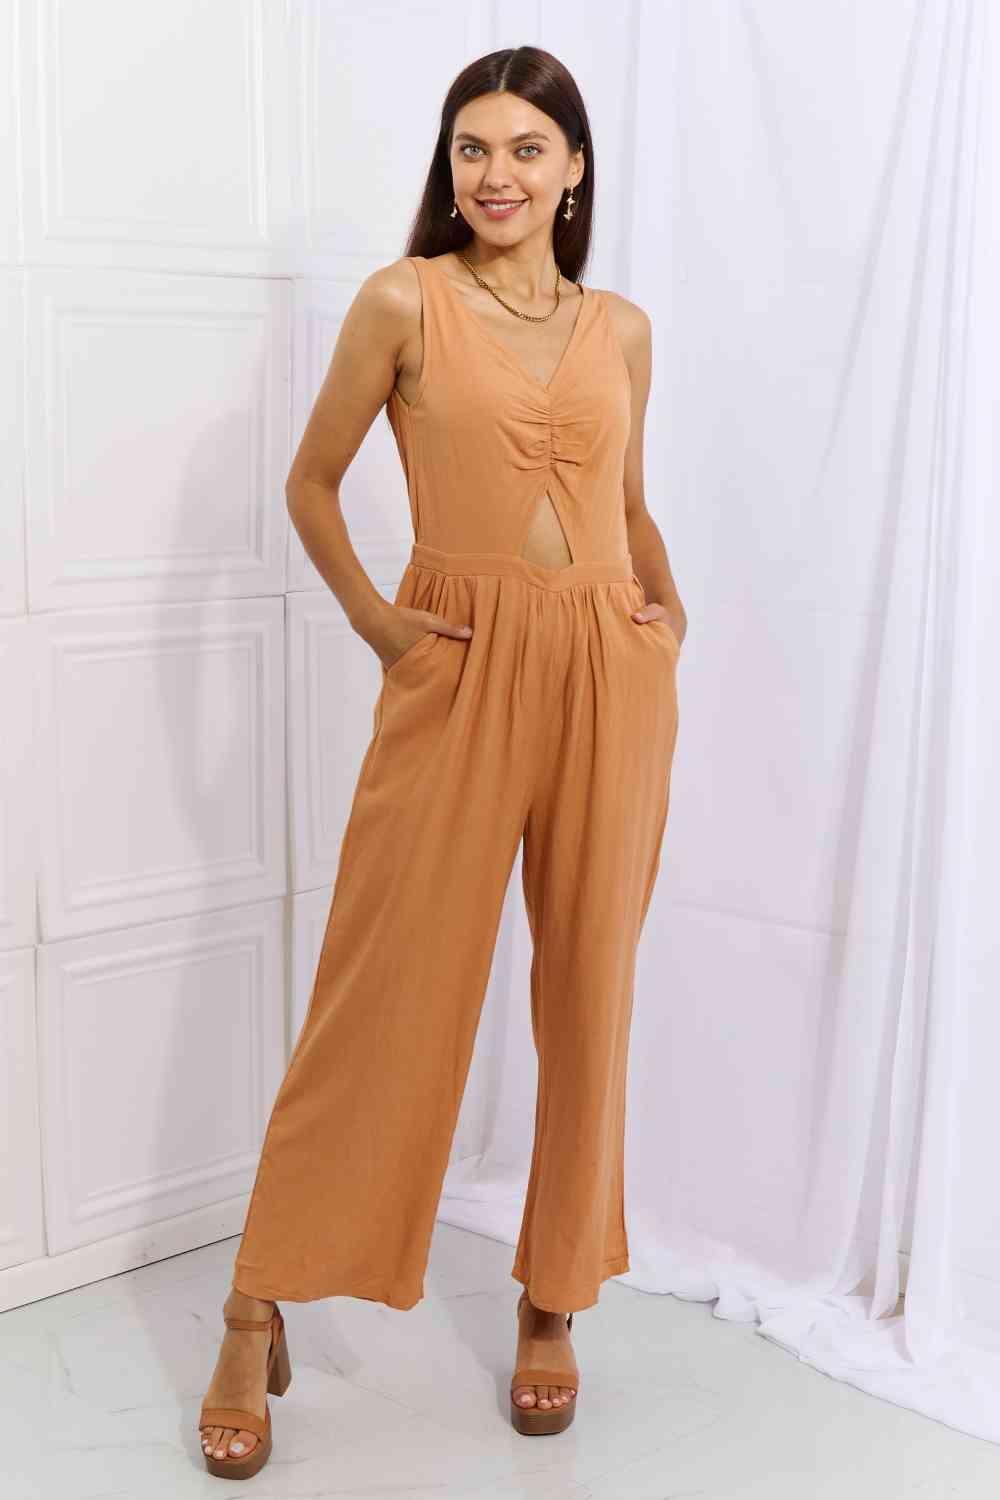 Bona Fide Fashion - Cut Out Detail Wide Leg Jumpsuit in Sherbet - Women Fashion - Bona Fide Fashion